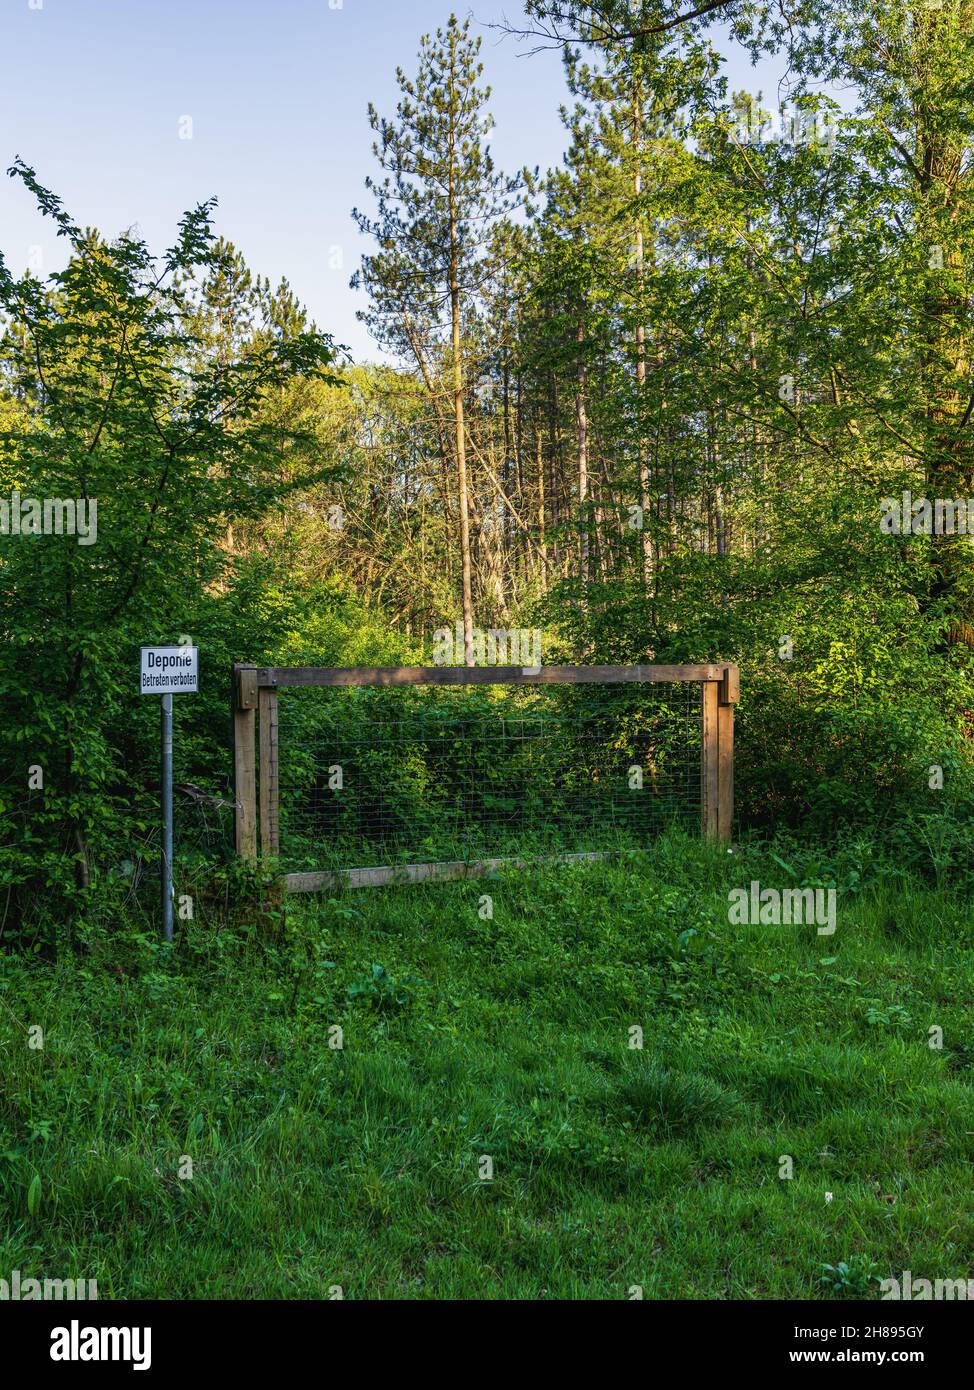 Porte fermée avec un panneau: Deponie Betreten verboten (allemand pour: Décharge, ne pas entrer), vu dans une forêt à Ratingen, Rhénanie-du-Nord-Westphalie, Allemagne Banque D'Images